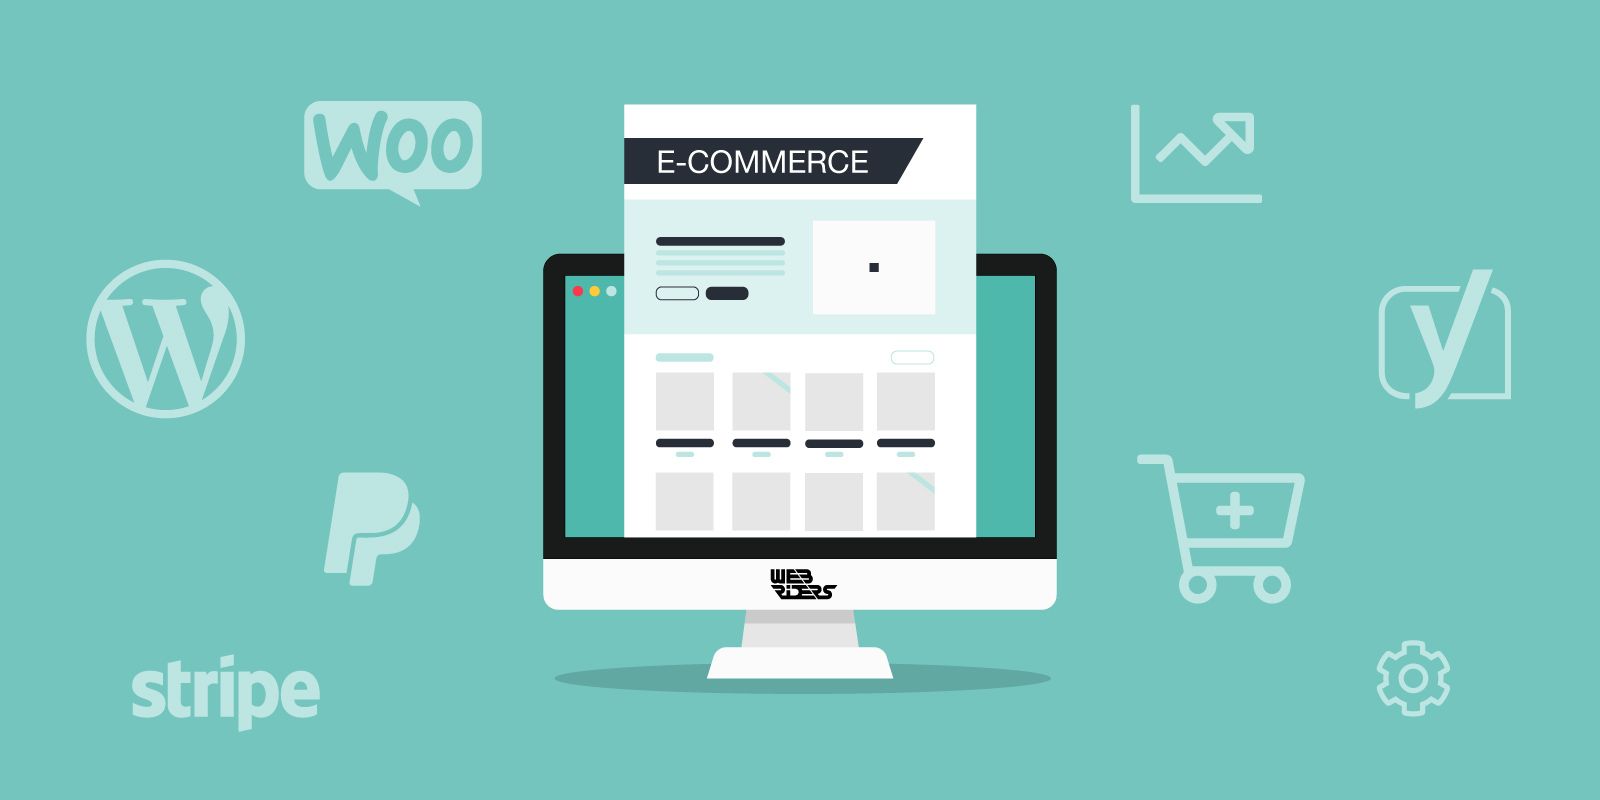 WebRiders - E-commerce Wordpress WooCommerce